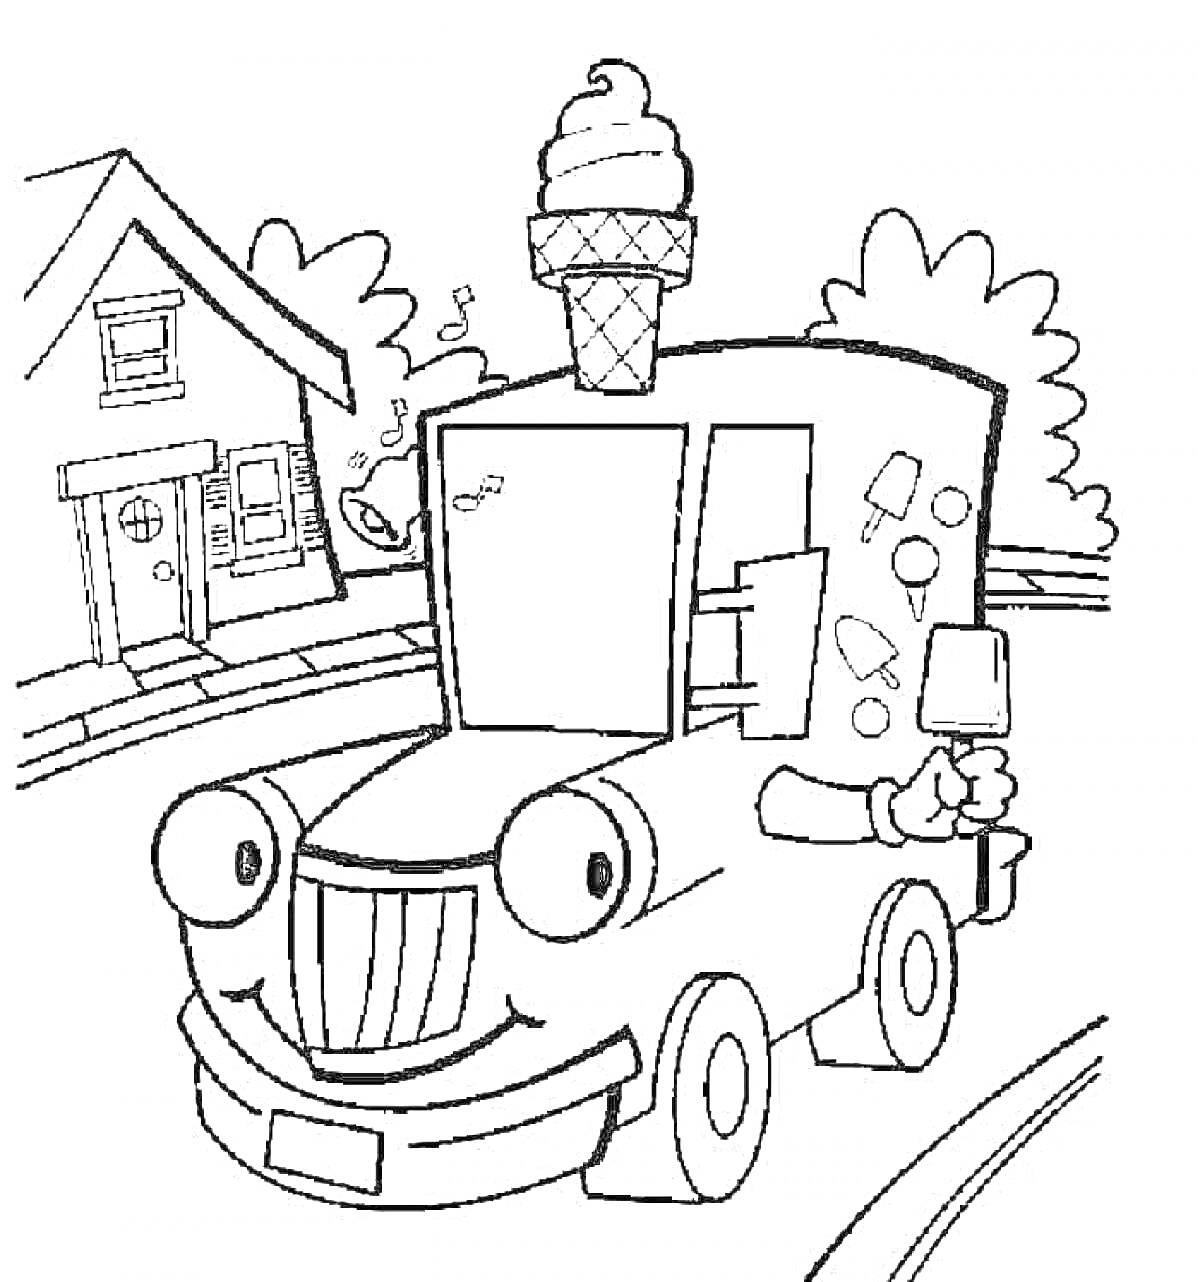 Машинка-мороженщик на фоне дороги с домом и деревьями